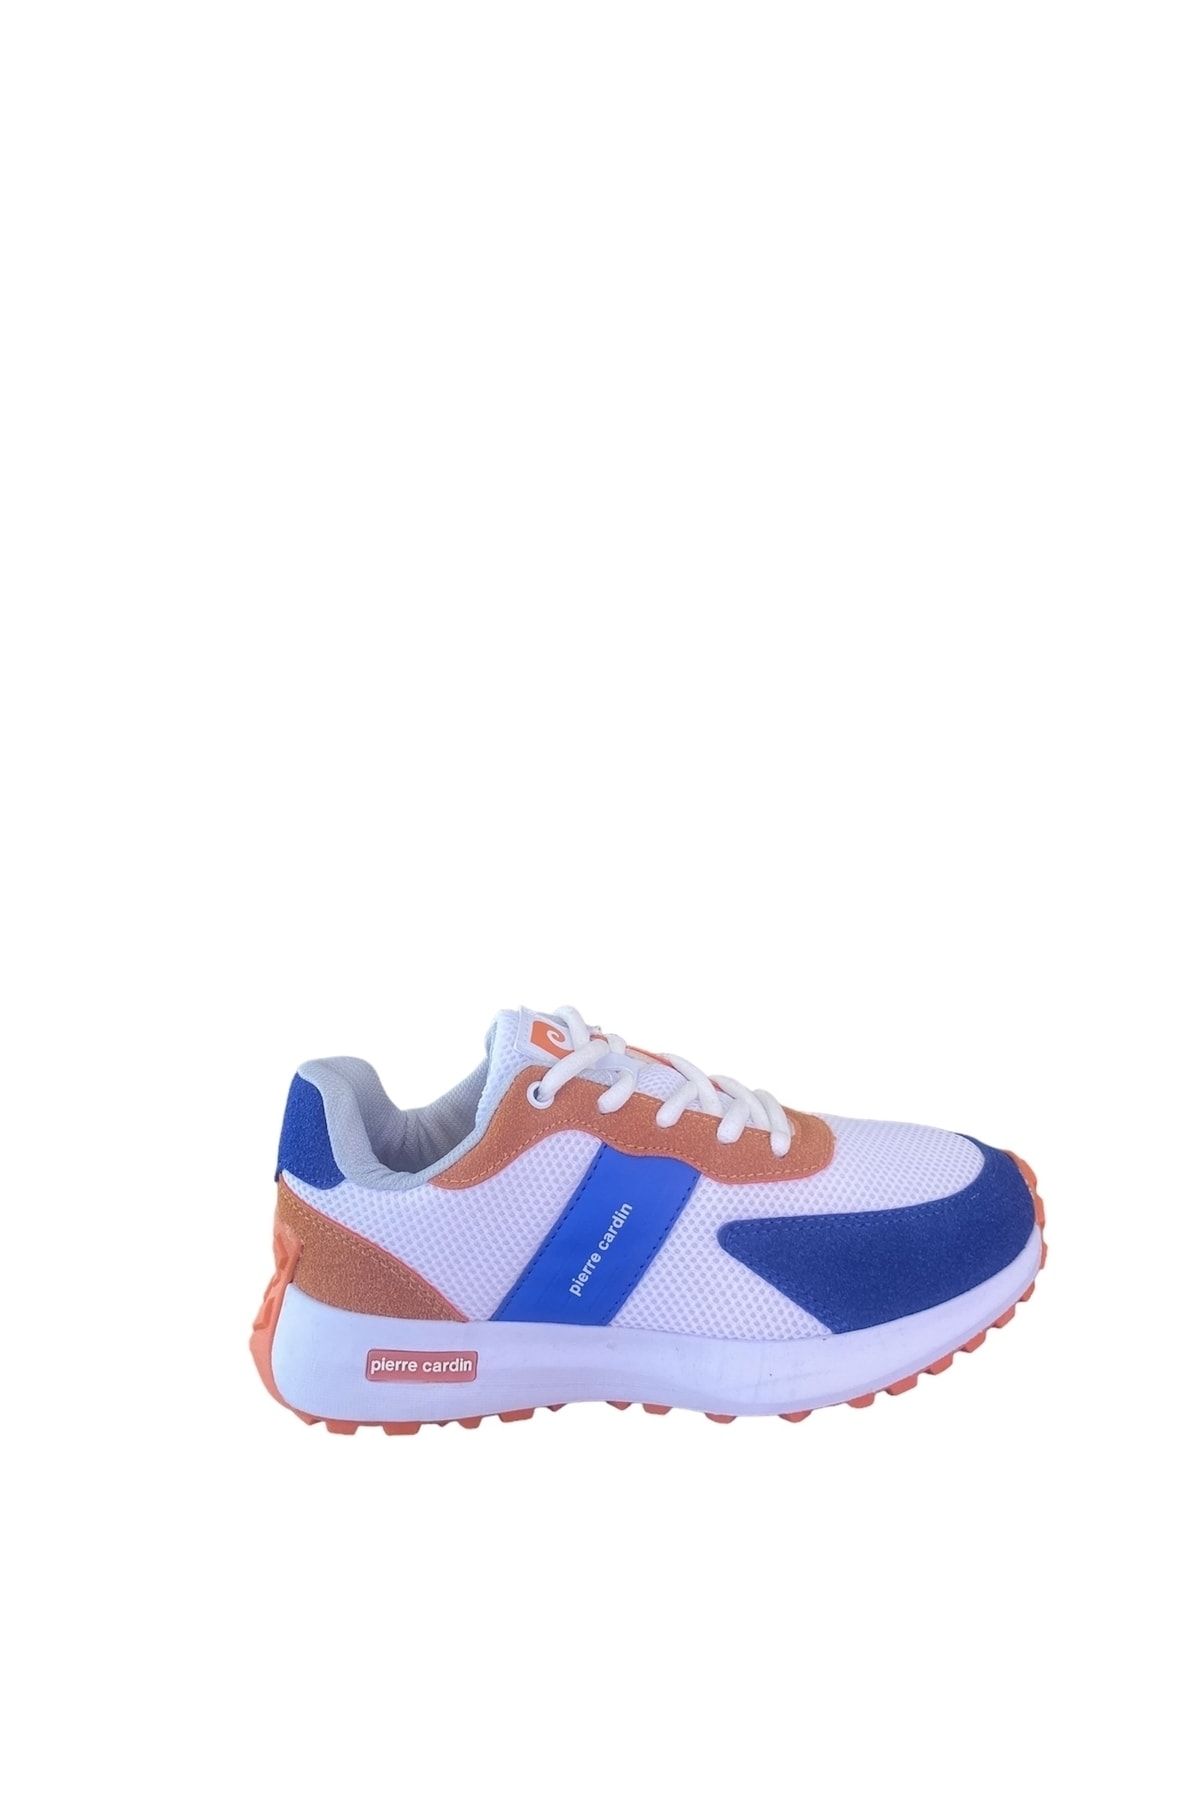 Pierre Cardin PC-31385 mavi-turuncu çok renkli spor ayakkabı sneaker